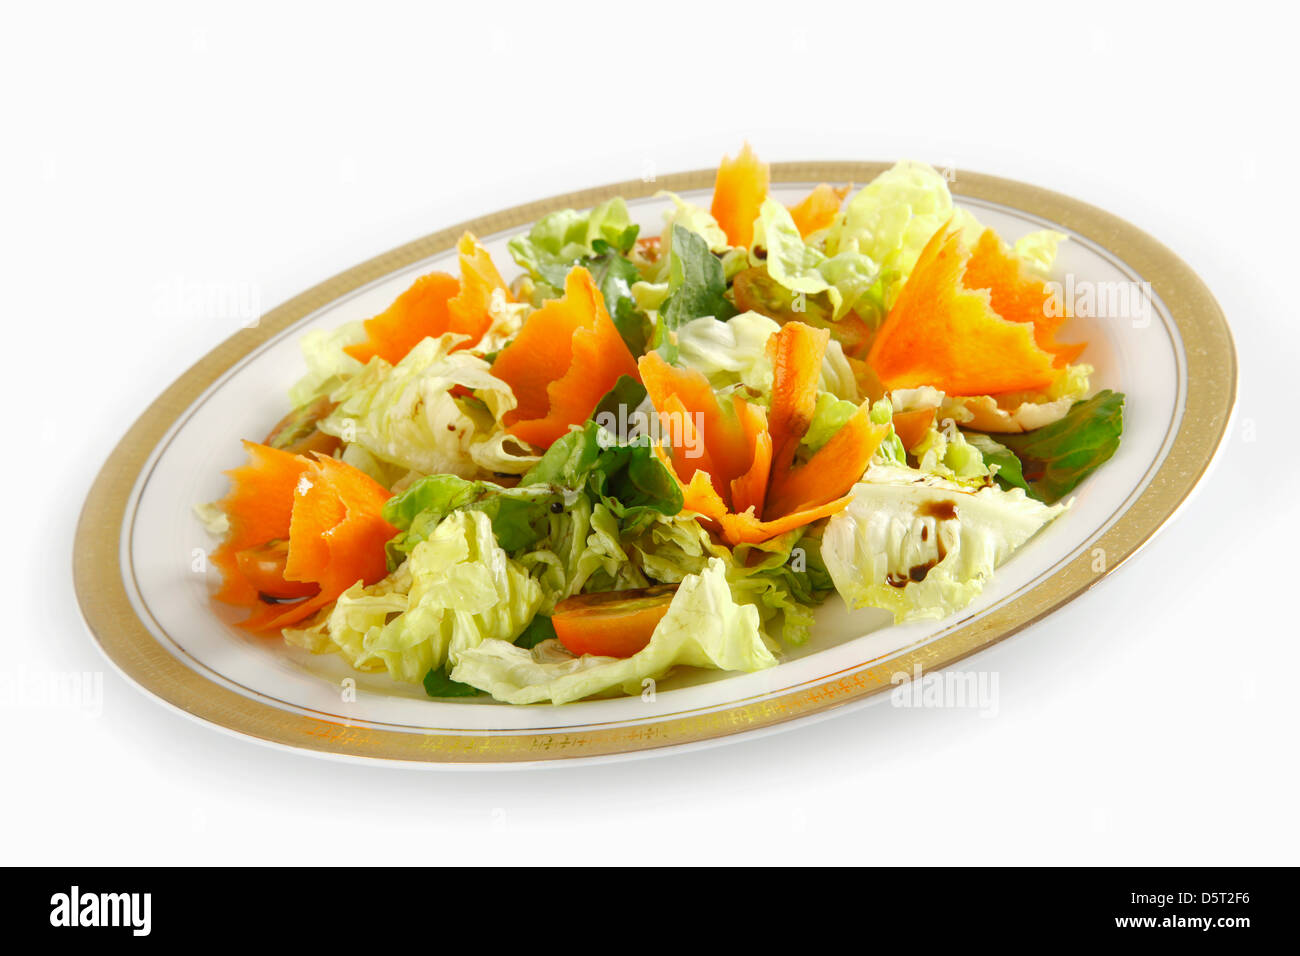 Ortaggi freschi: carota e lattuga; mangiare sano e dietetico Foto Stock